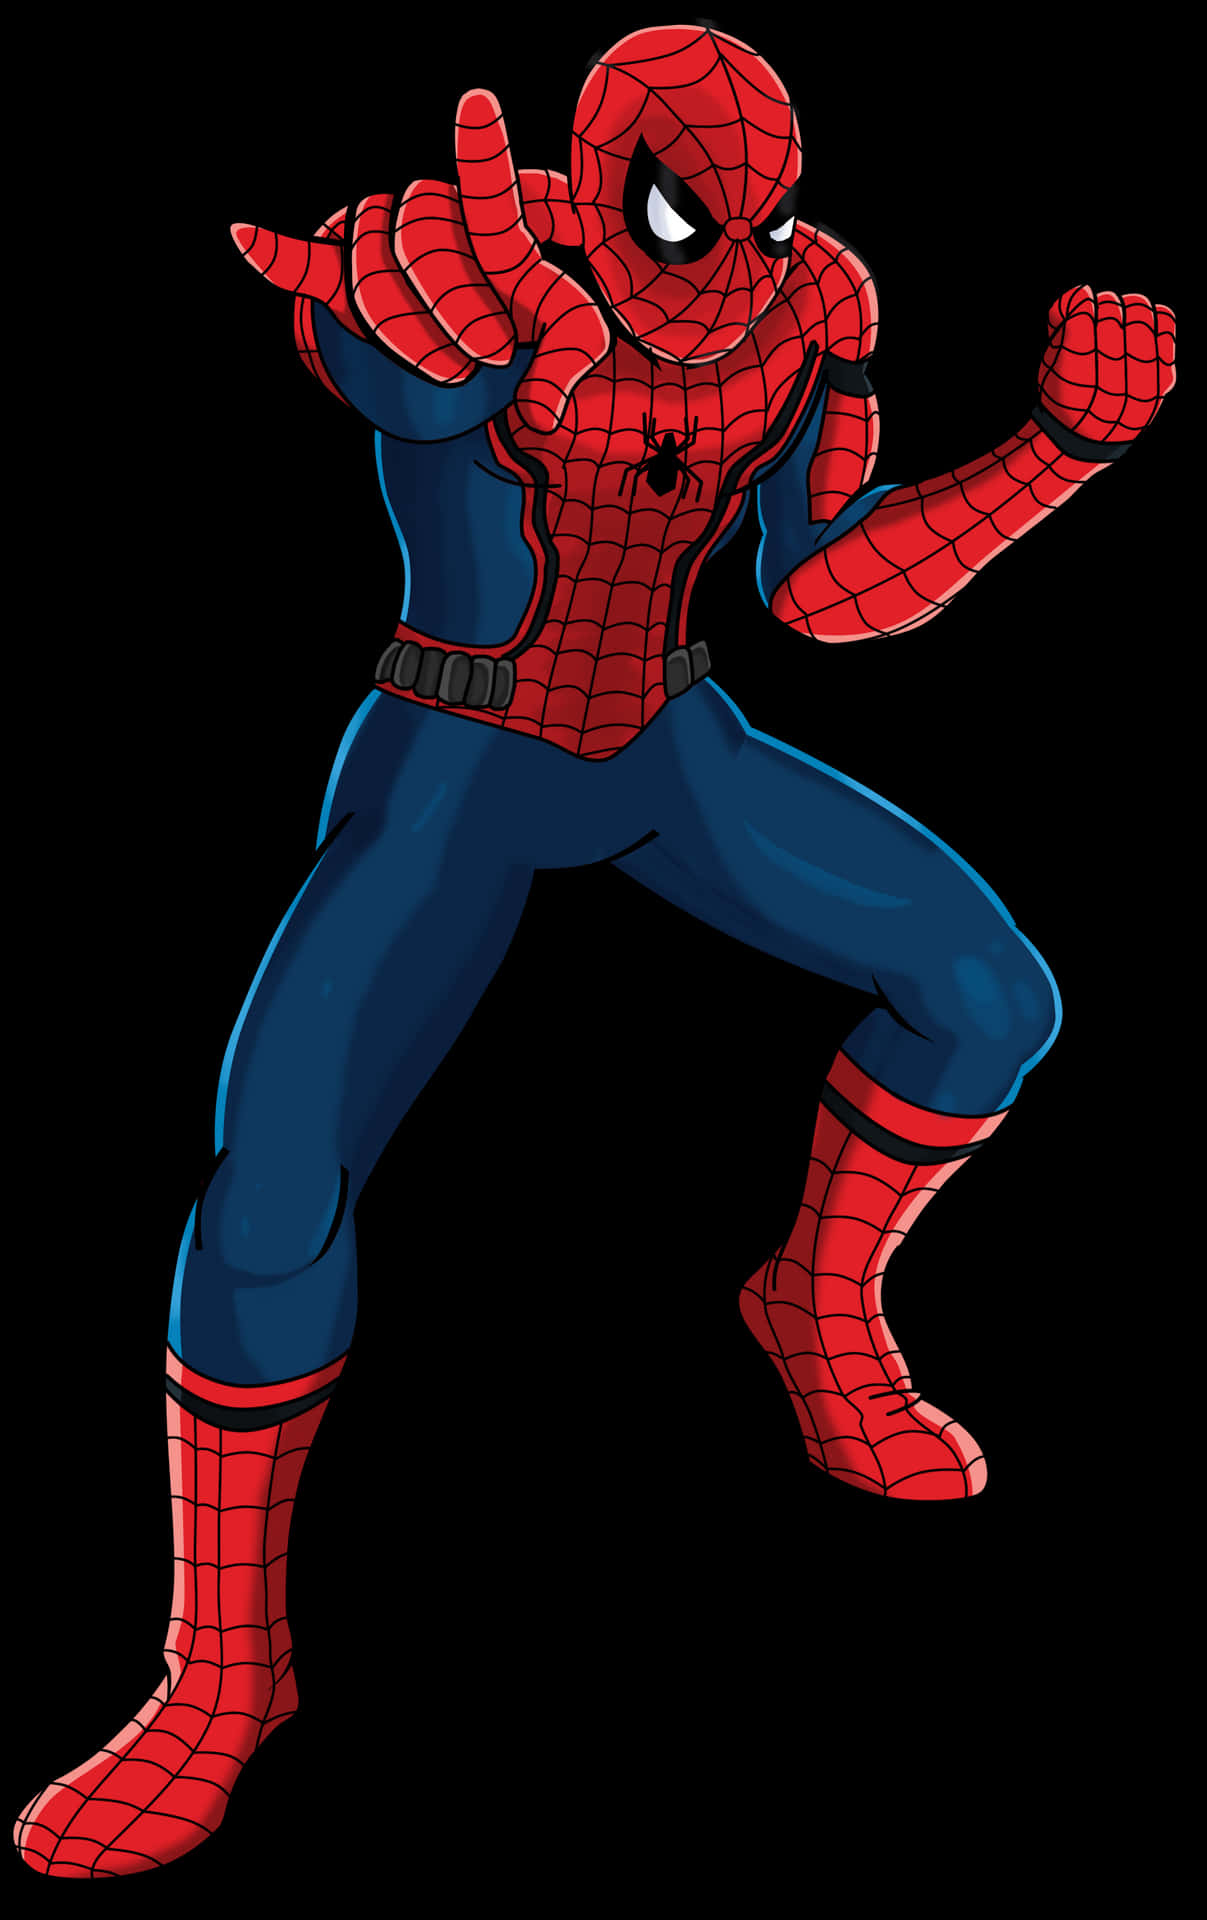 Denspektakulära Spider-man I Cool Pose. Wallpaper